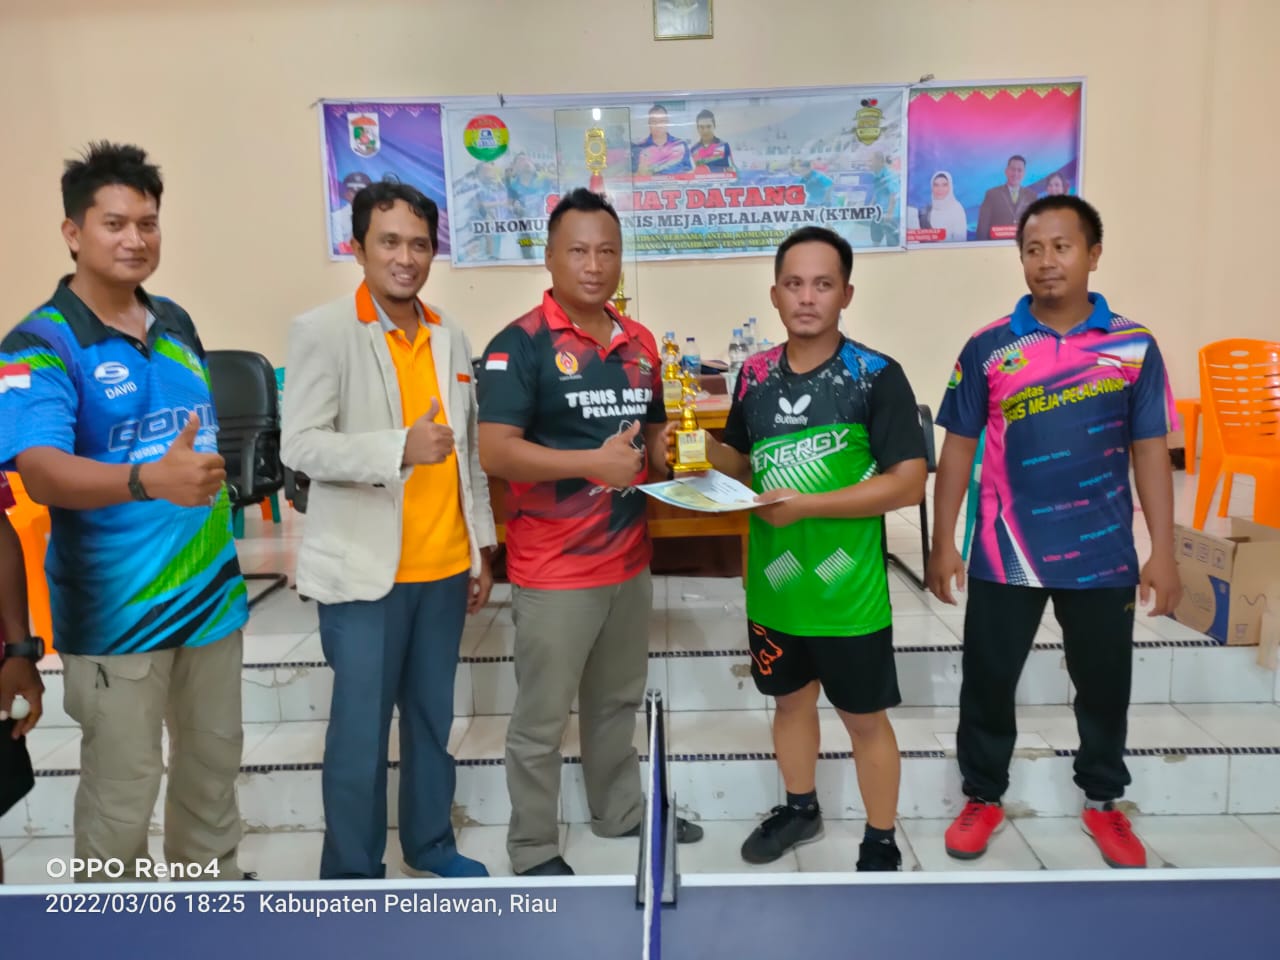 Untuk Meningkatkan Silaturahmi Antar Komunitas, Komunitas Tenis Meja Pelalawan Adakan Turnamen